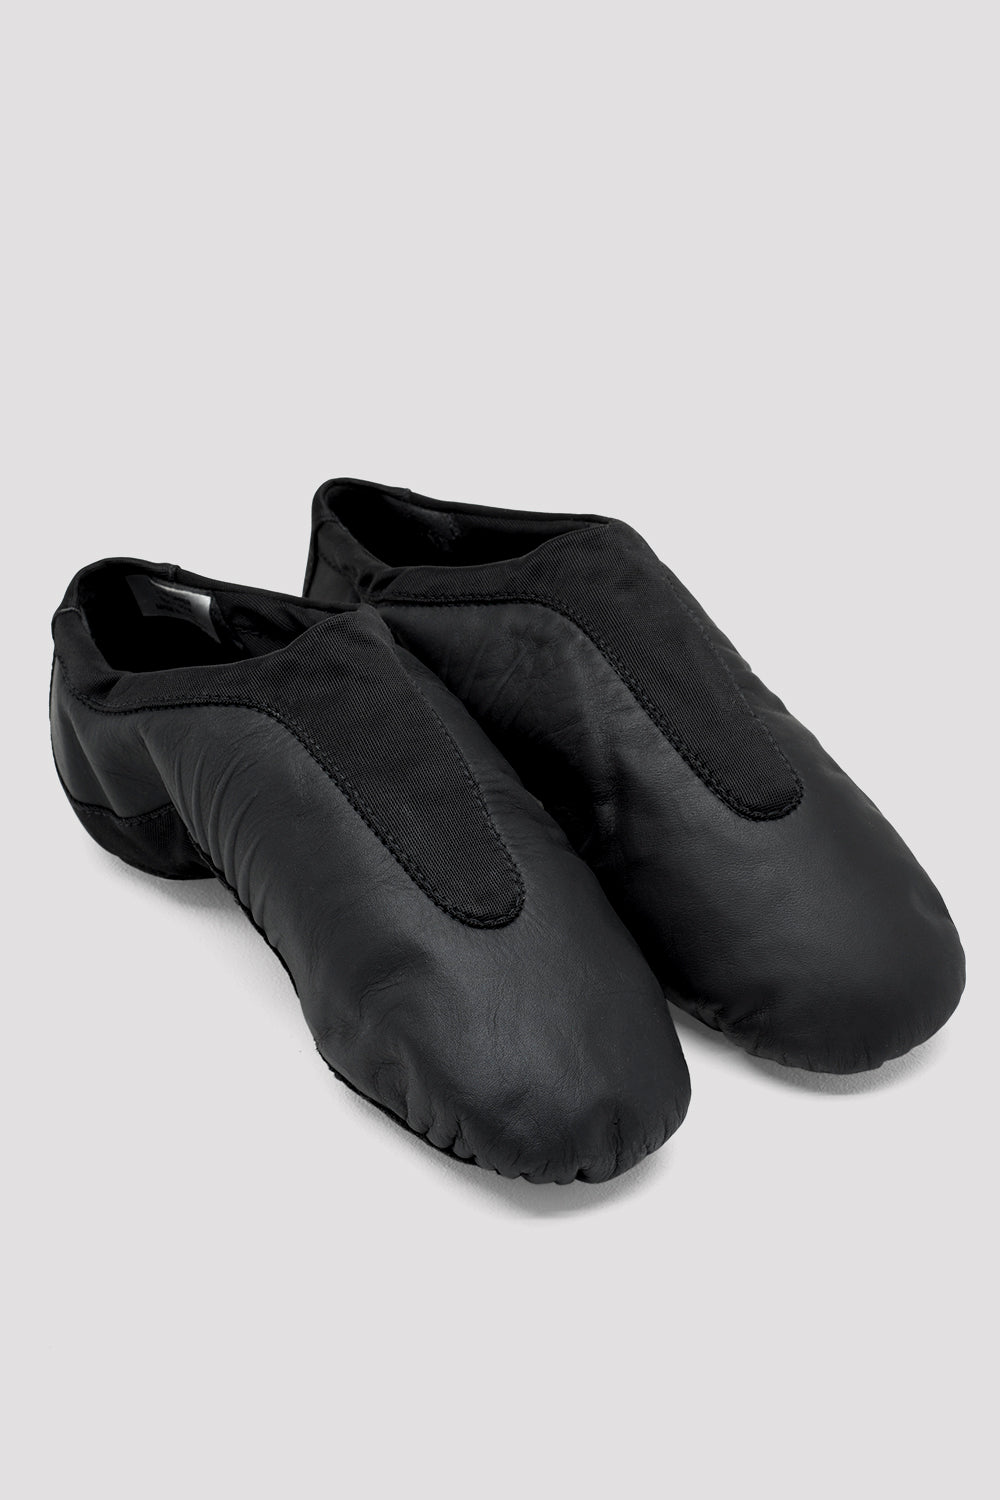 Pulse Leather Adult Jazz Shoe